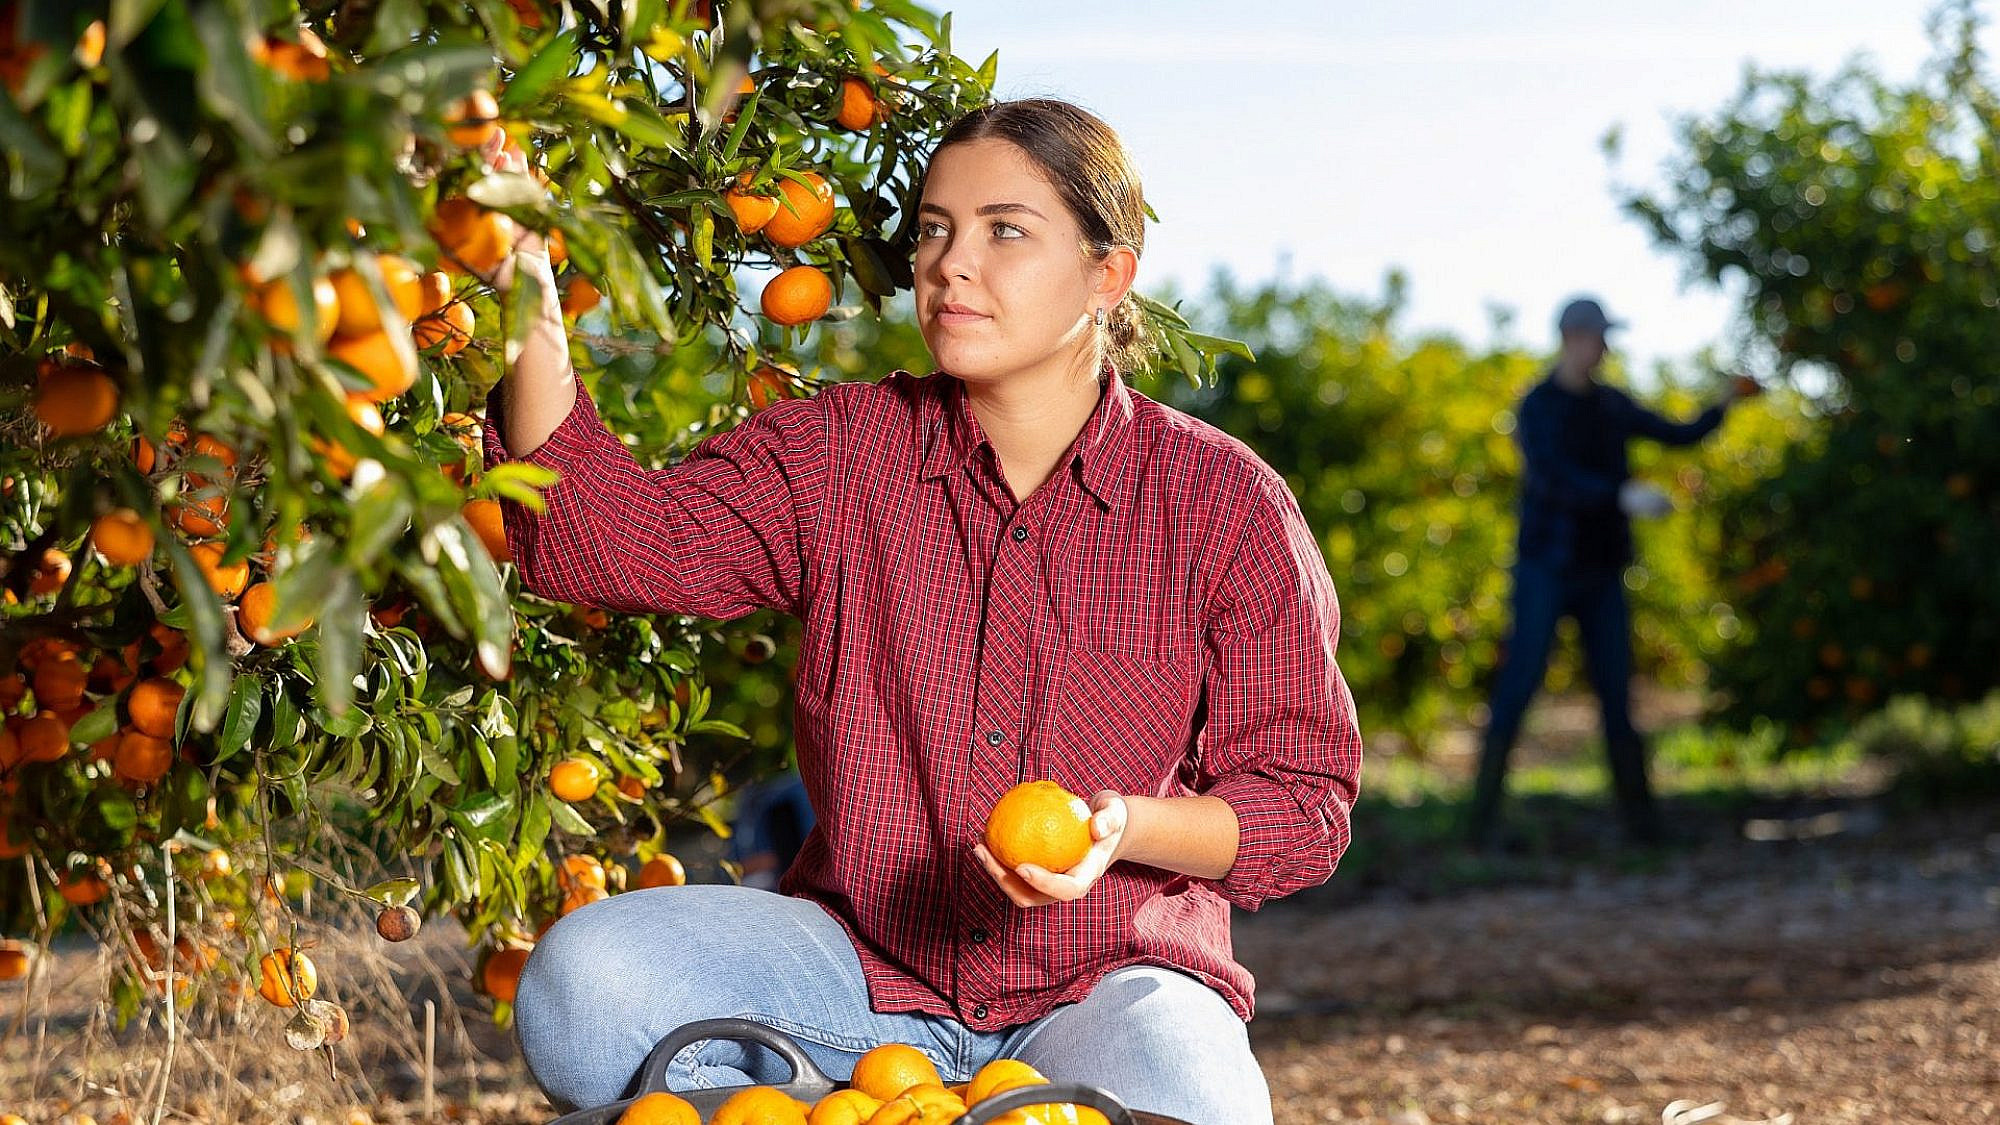 המון חקלאים צריכים עוד ידיים עובדות | צילום: Shutterstock